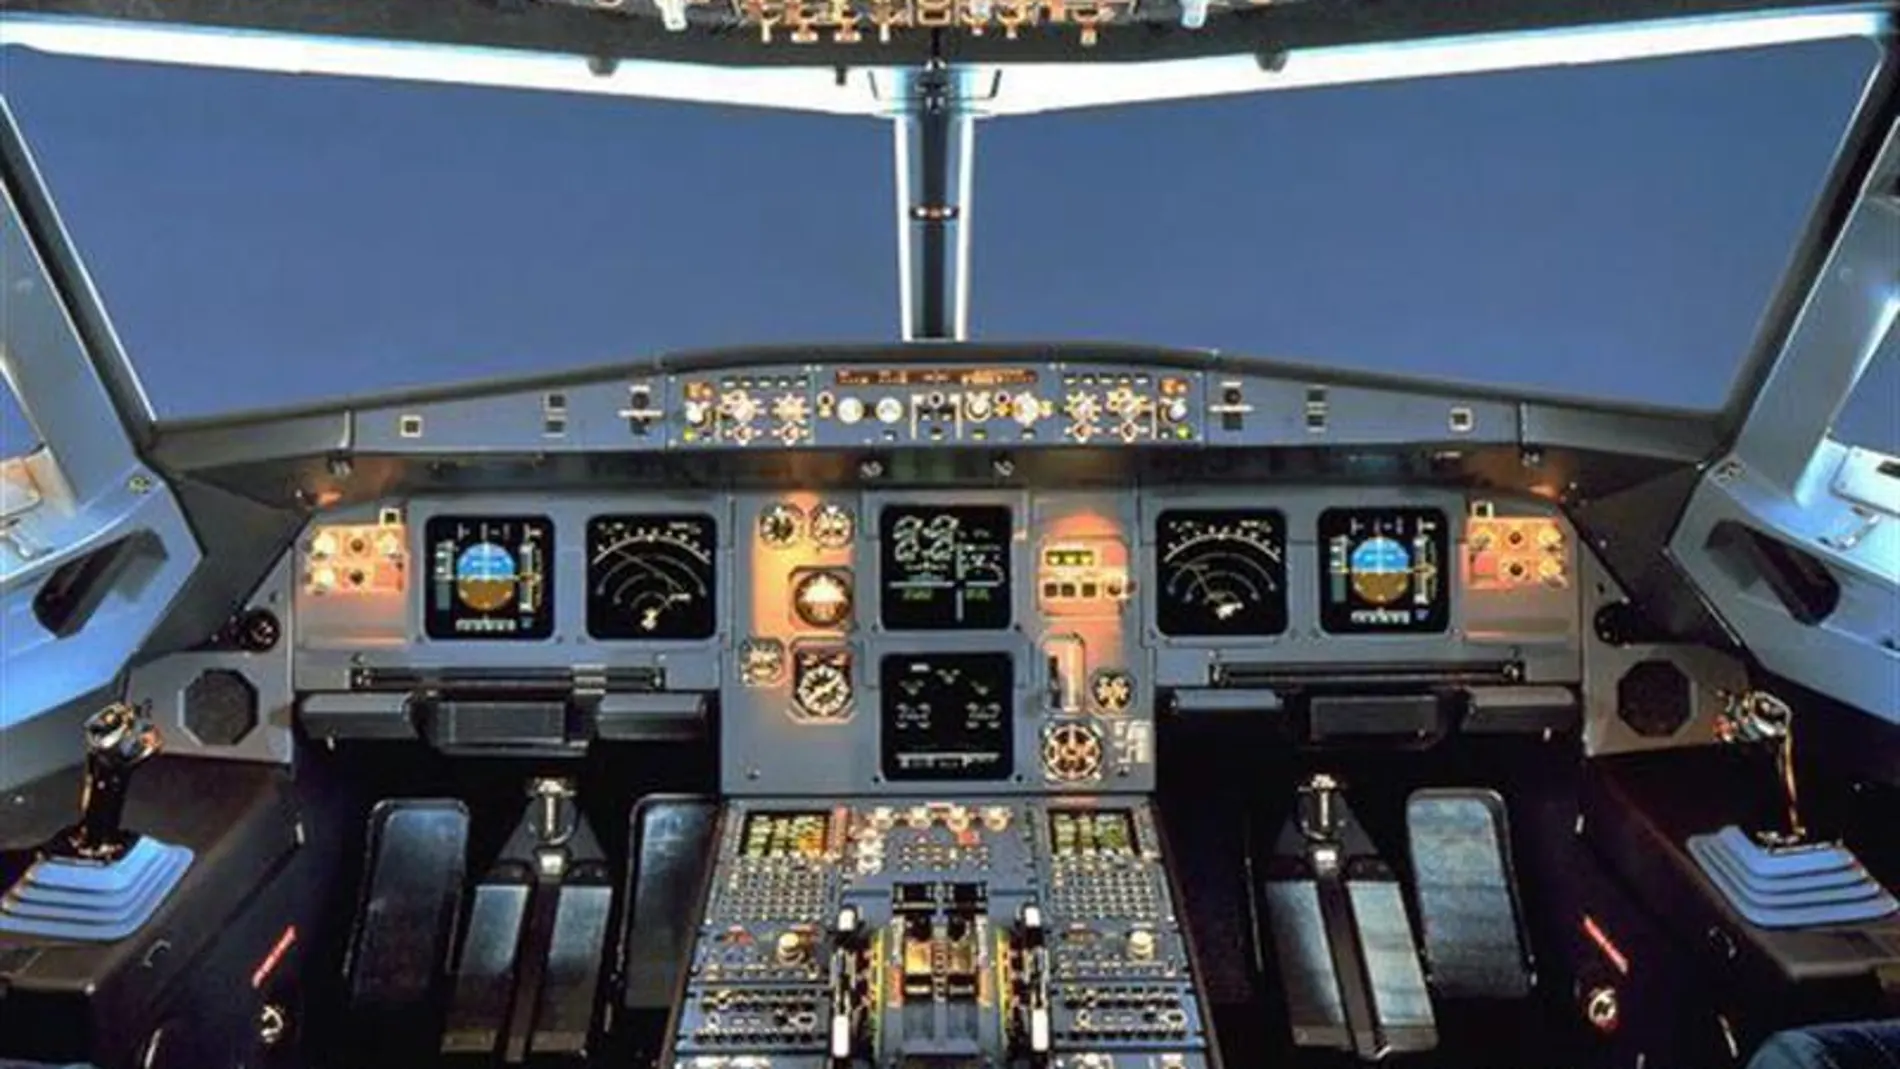  Fotografía que muestra la cabina de un Airbus